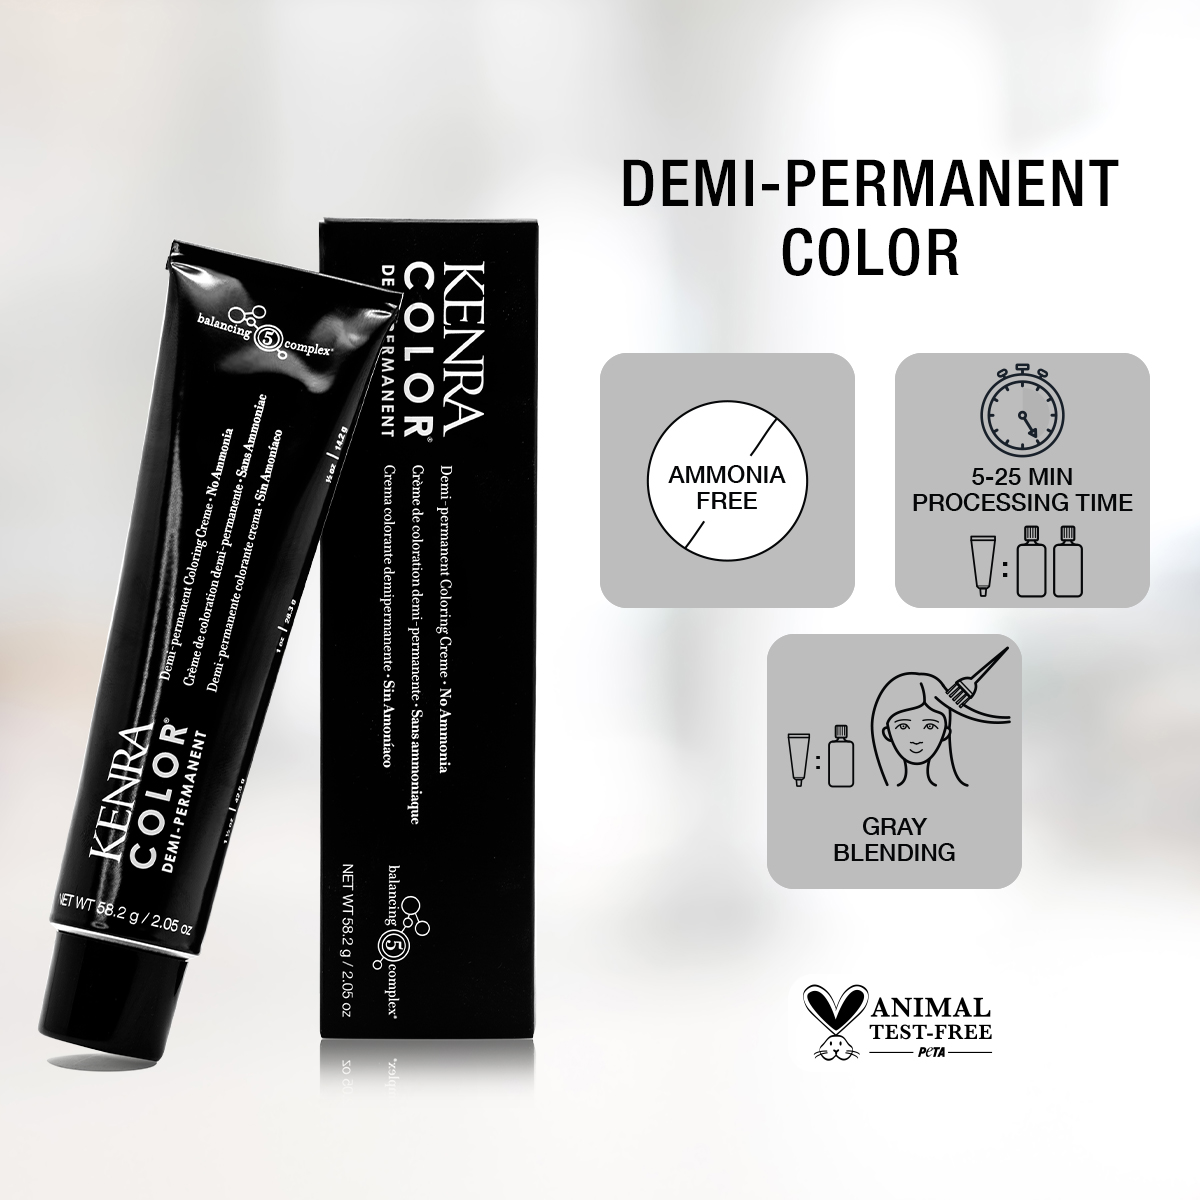 When to Use Permanent vs. Demi-Permanent Color